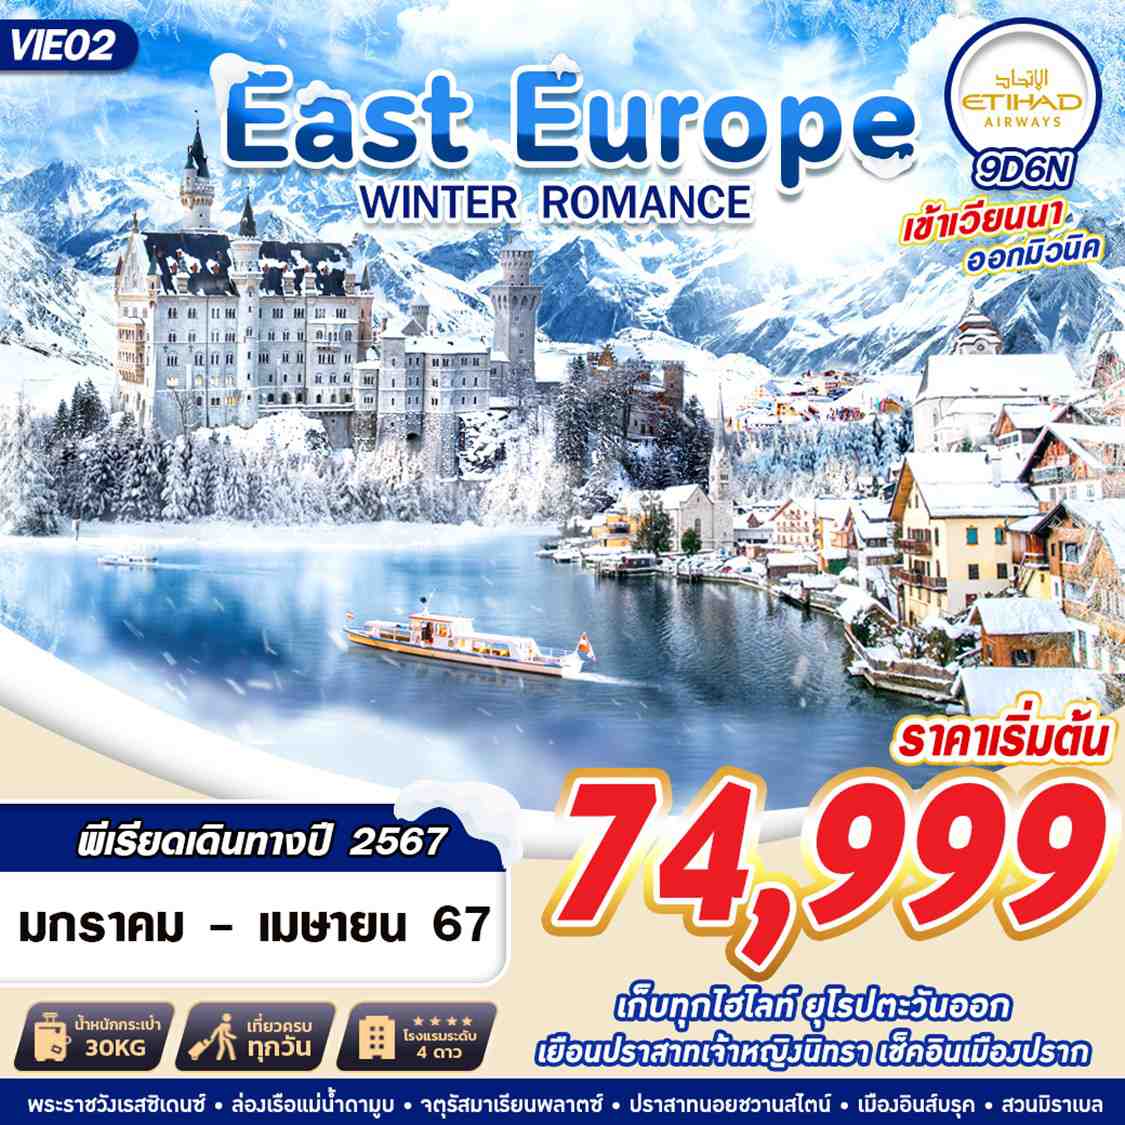 ทัวร์ยุโรป EAST EUROPE WINTER ROMANCE 